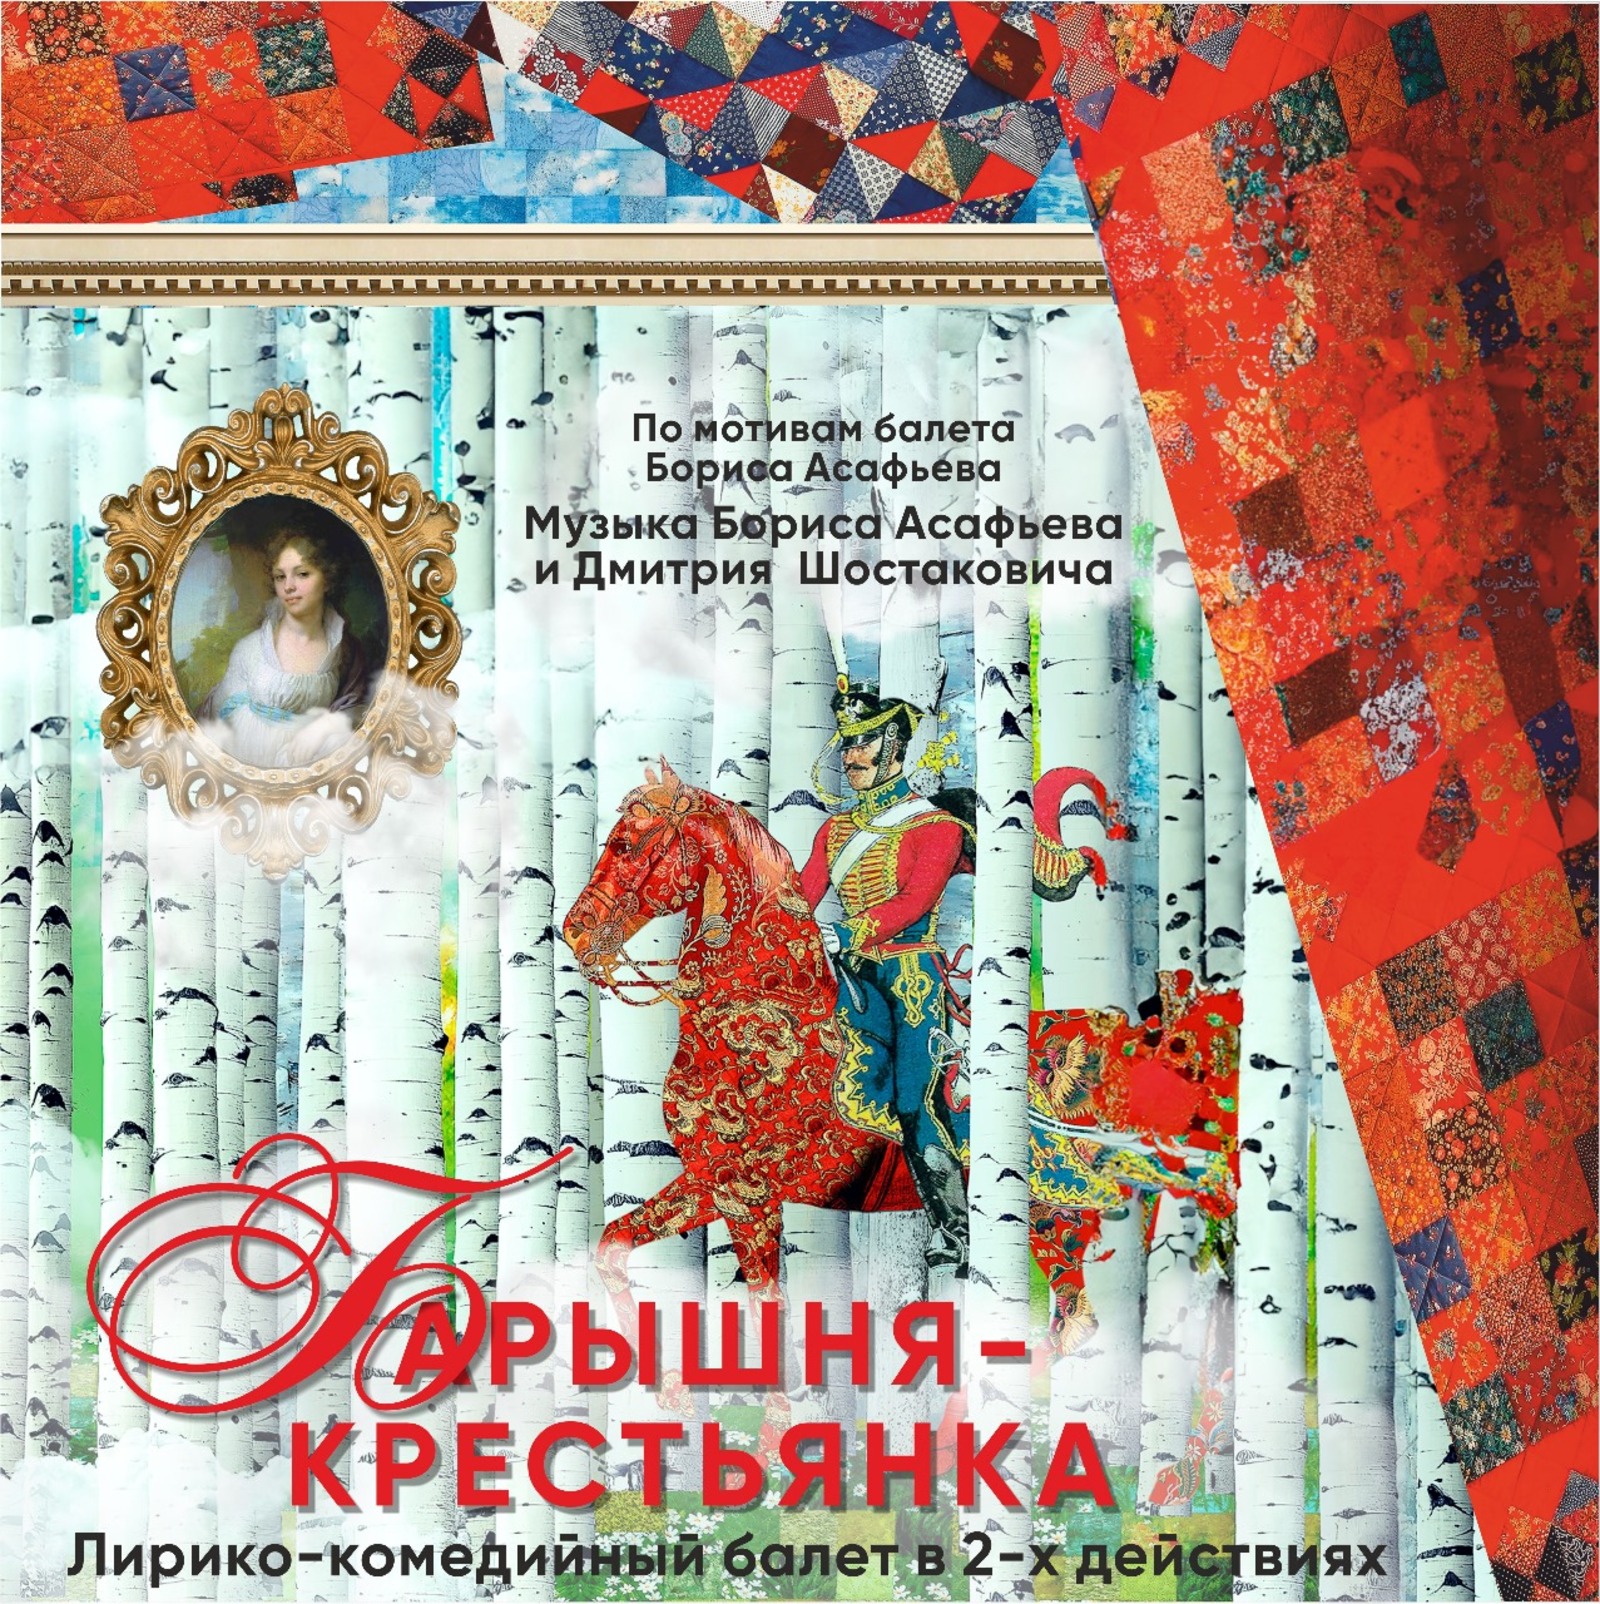 В Башкирском государственном театре оперы и балета состоится премьера балета «Барышня-крестьянка»